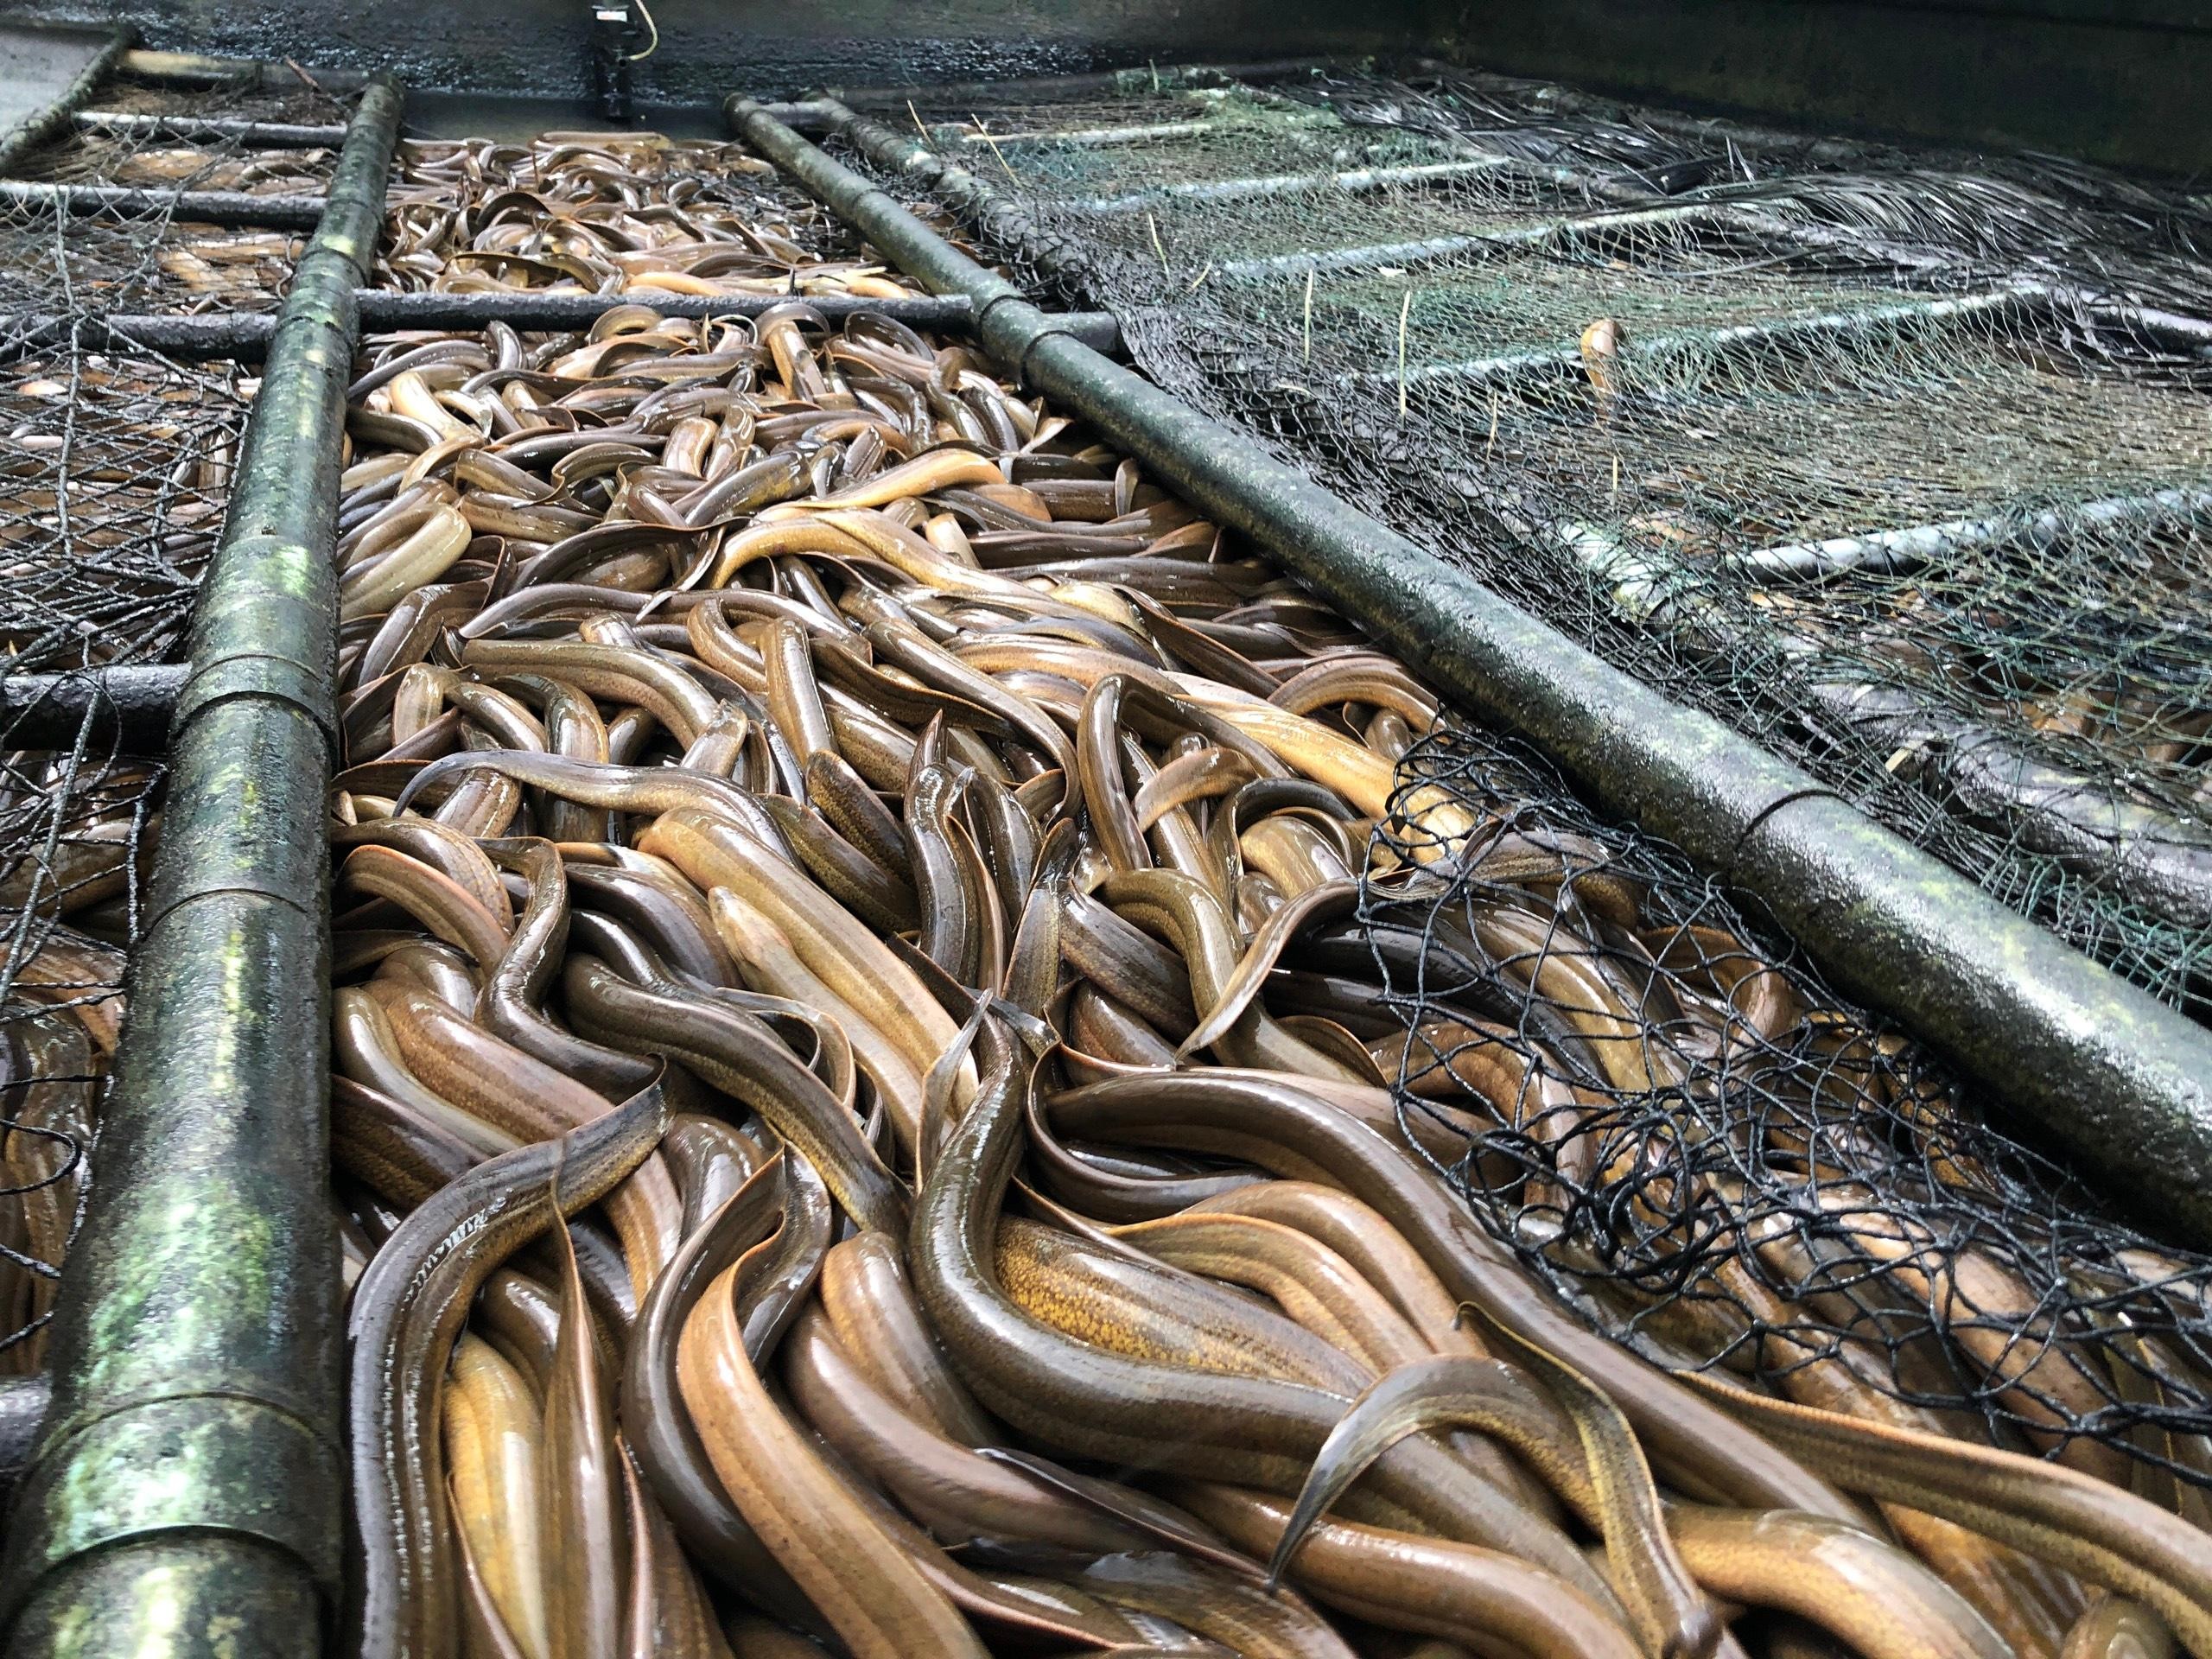 

Để đáp ứng nhu cầu của người tiêu dùng, mô hình nuôi lươn không bùn kiểu mới đã được nuôi thử nghiệm tại nhiều địa phương và cho nhiều kết quả tích cực từ đó mang đến nguồn lợi nhuận cao dành cho người chăn nuôi
